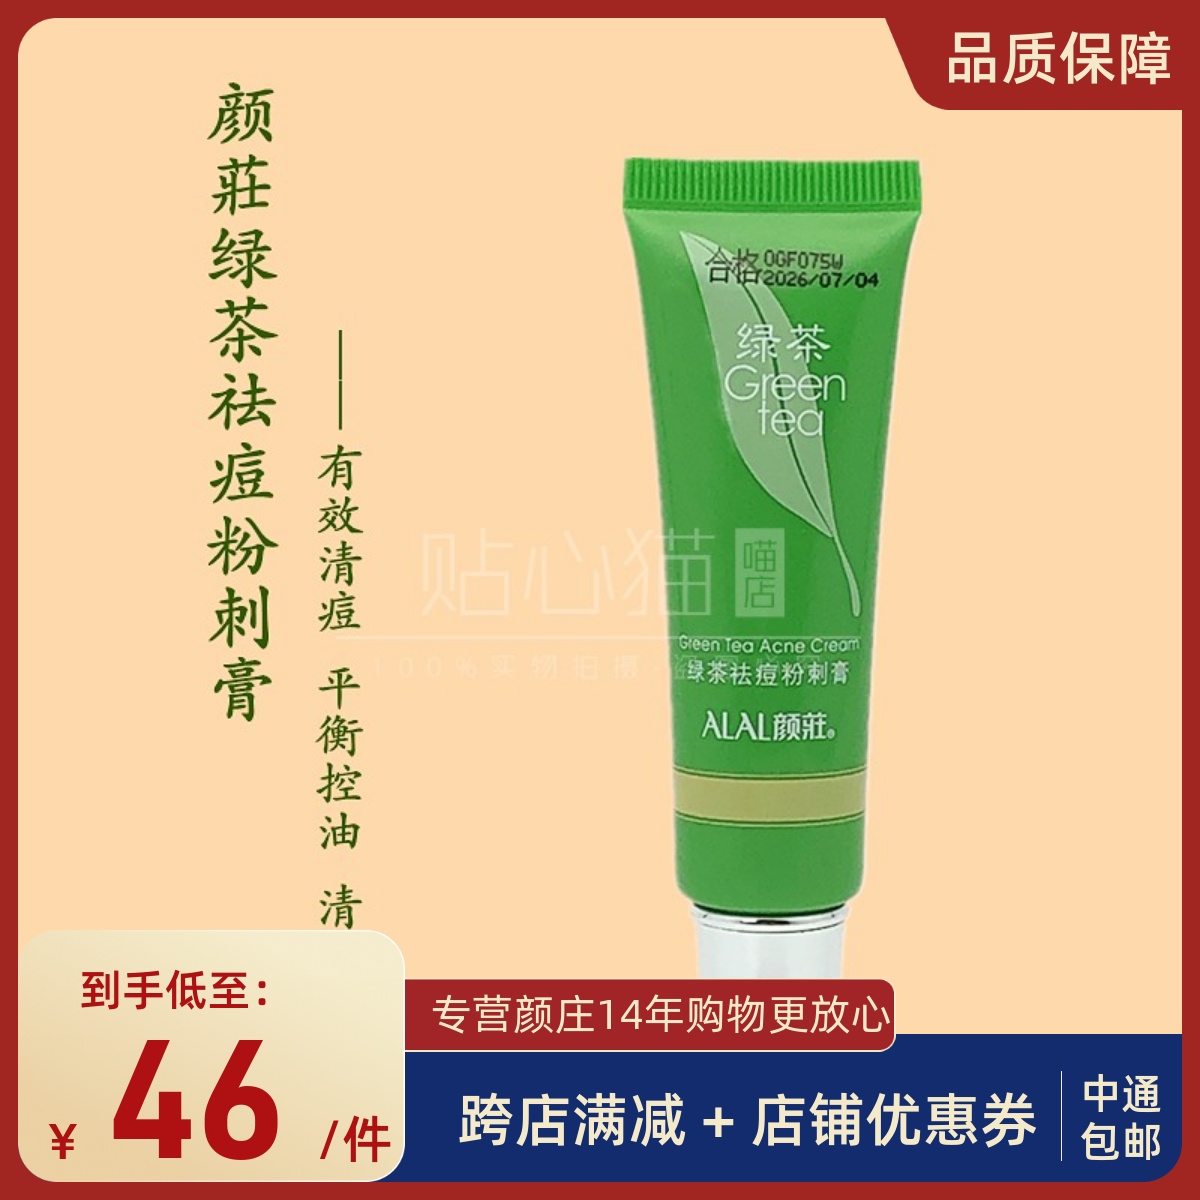 颜庄绿茶祛痘粉刺膏2支水杨酸芦荟控油修护祛闭口粉刺淡化痘印